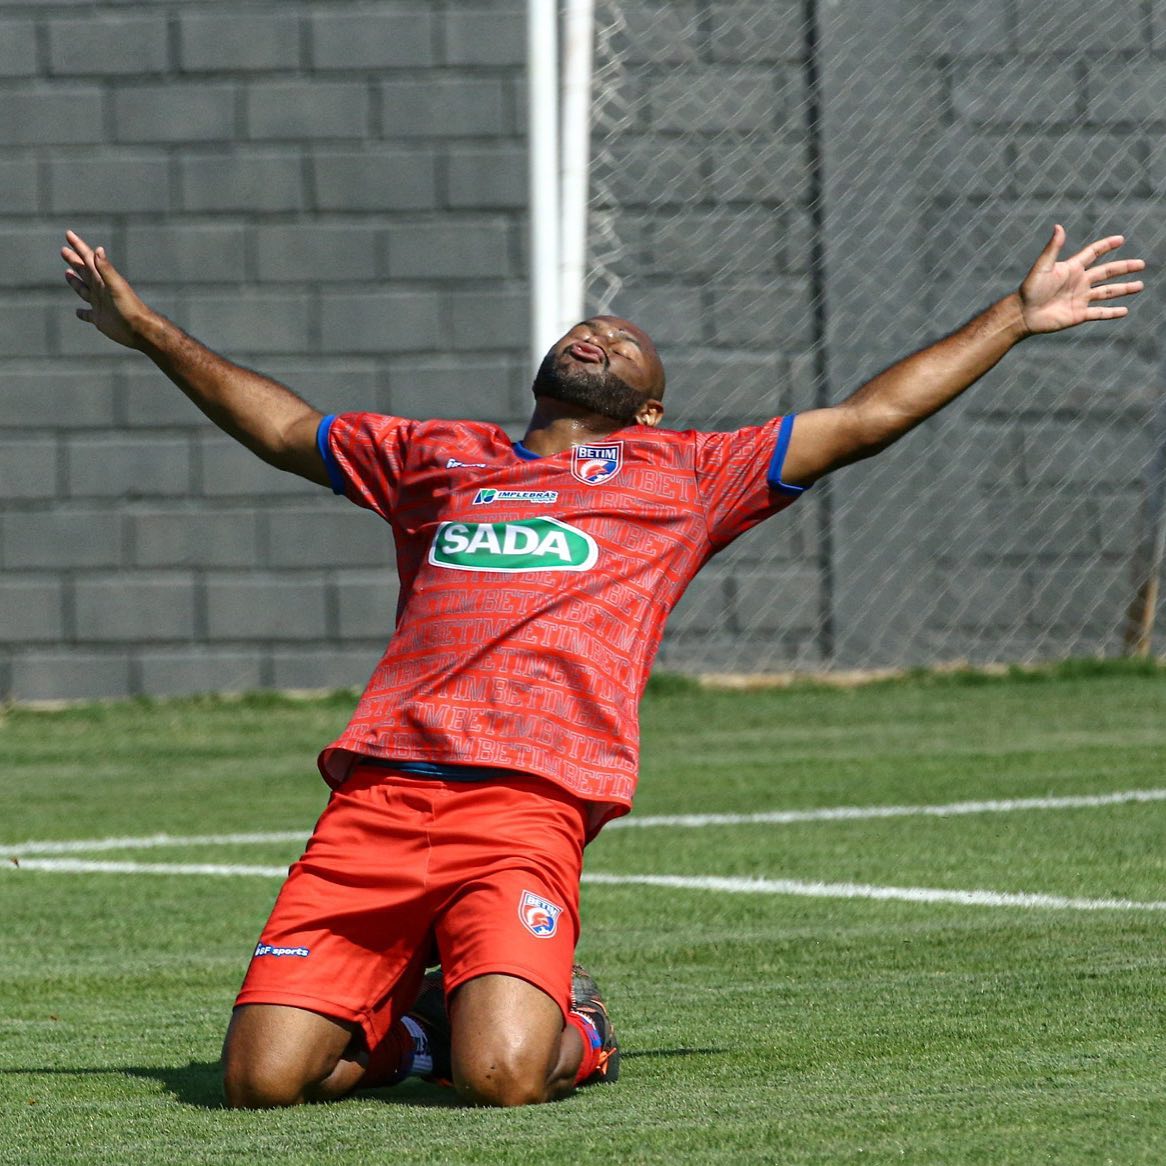 Paulo Henrique comemora gol marcado em amistoso do Betim Futebol